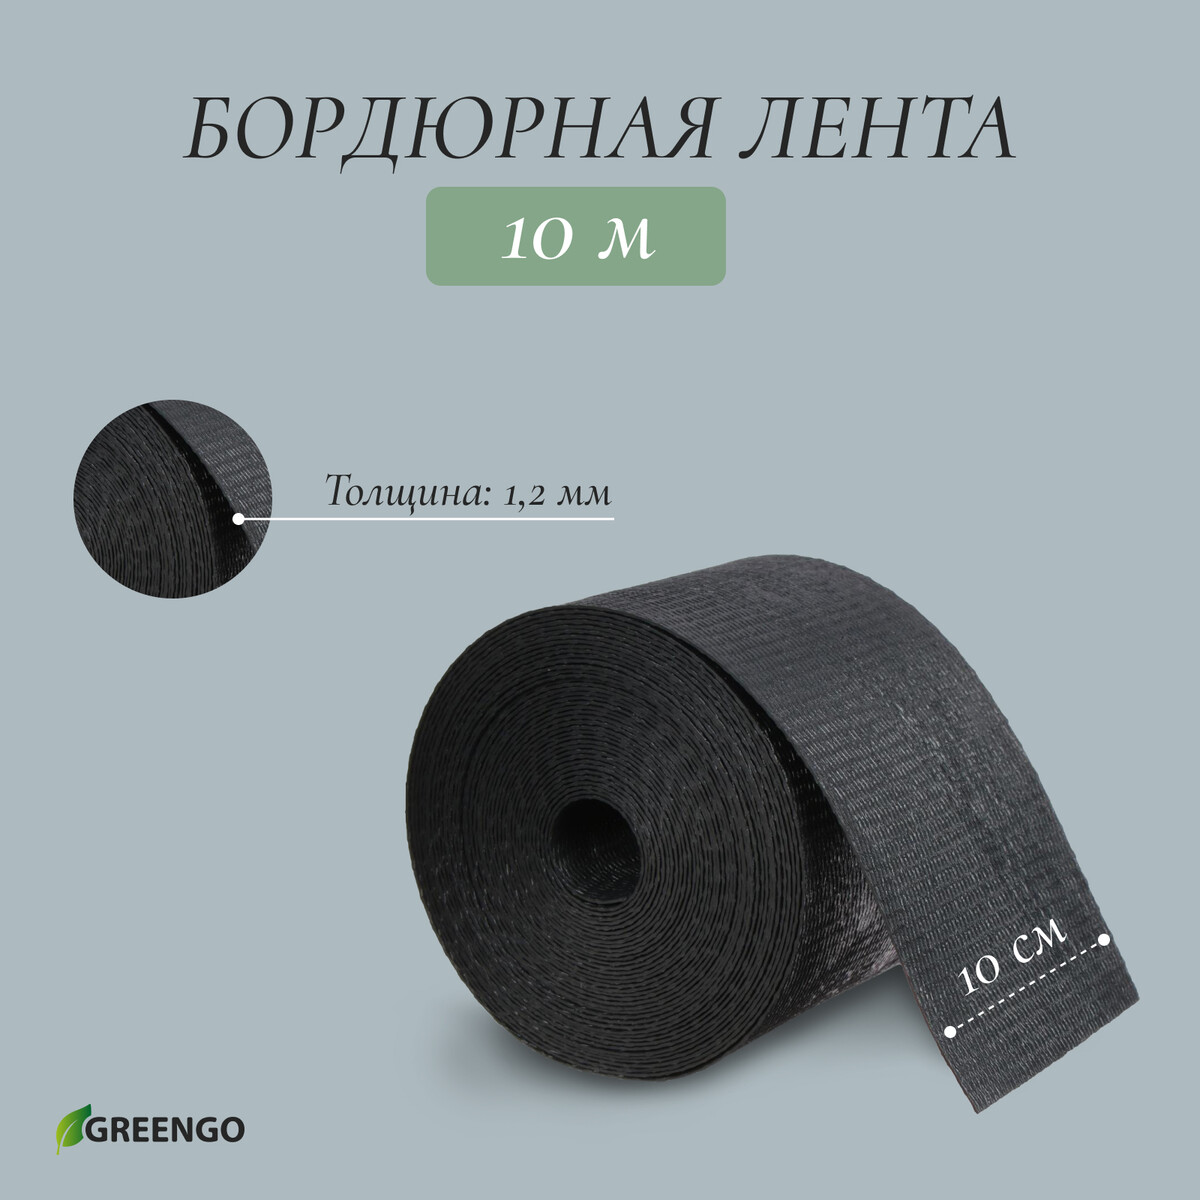 Лента бордюрная, 0,1 × 10 м, толщина 1,2 мм, пластиковая, черная, greengo Greengo